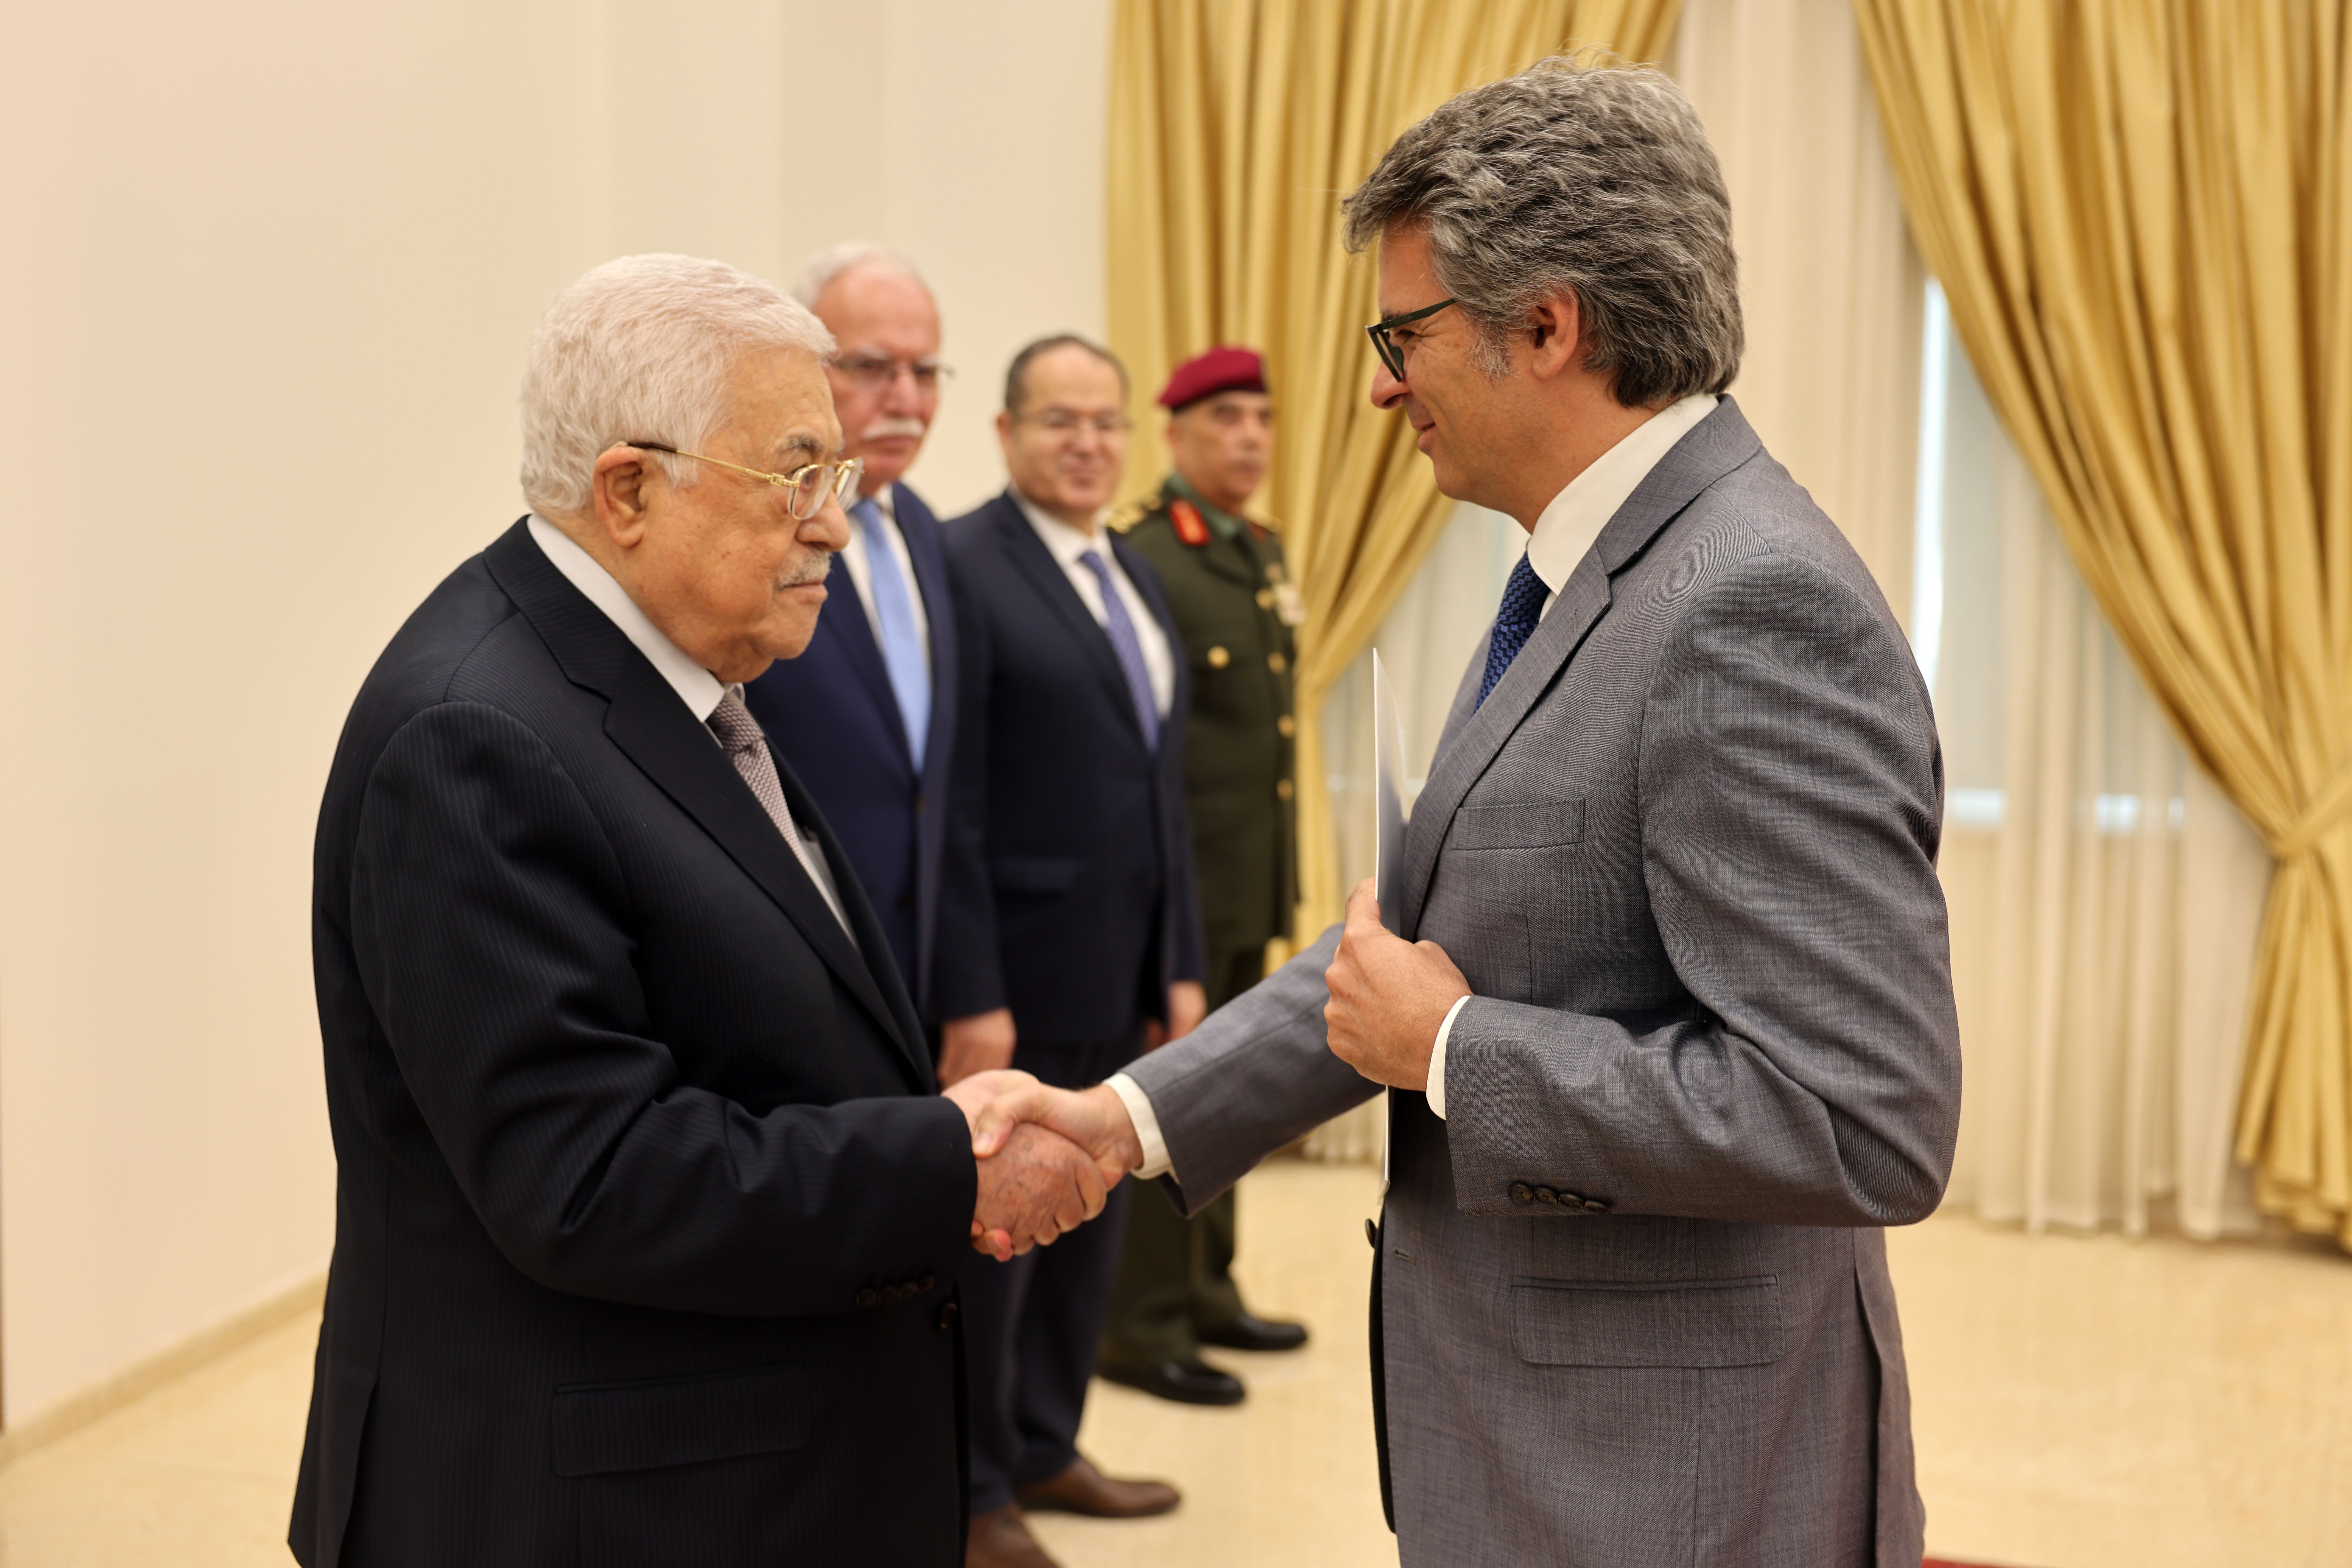 الرئيس يتقبل أوراق اعتماد رئيس مكتب تمثيل جمهورية البرتغال لدى فلسطين.jpg